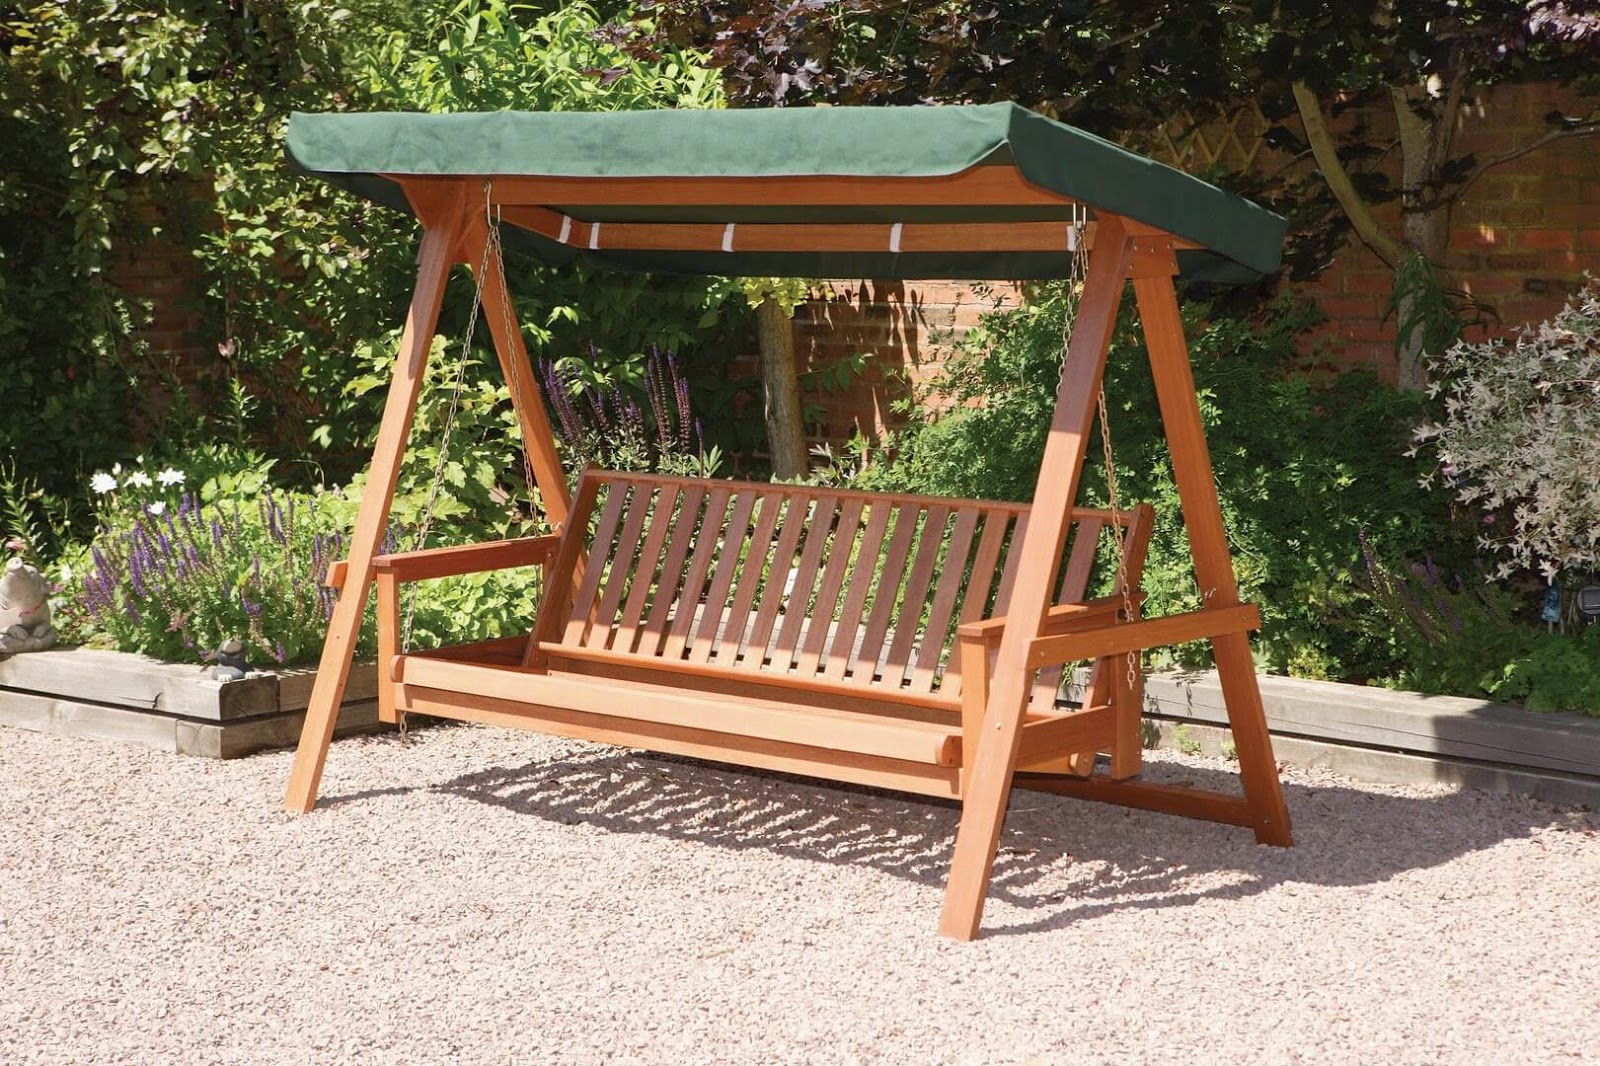 Xích đu gỗ là một vật vừa có thể trang trí sân vườn, vừa giúp bạn có nơi ngồi thư giãn